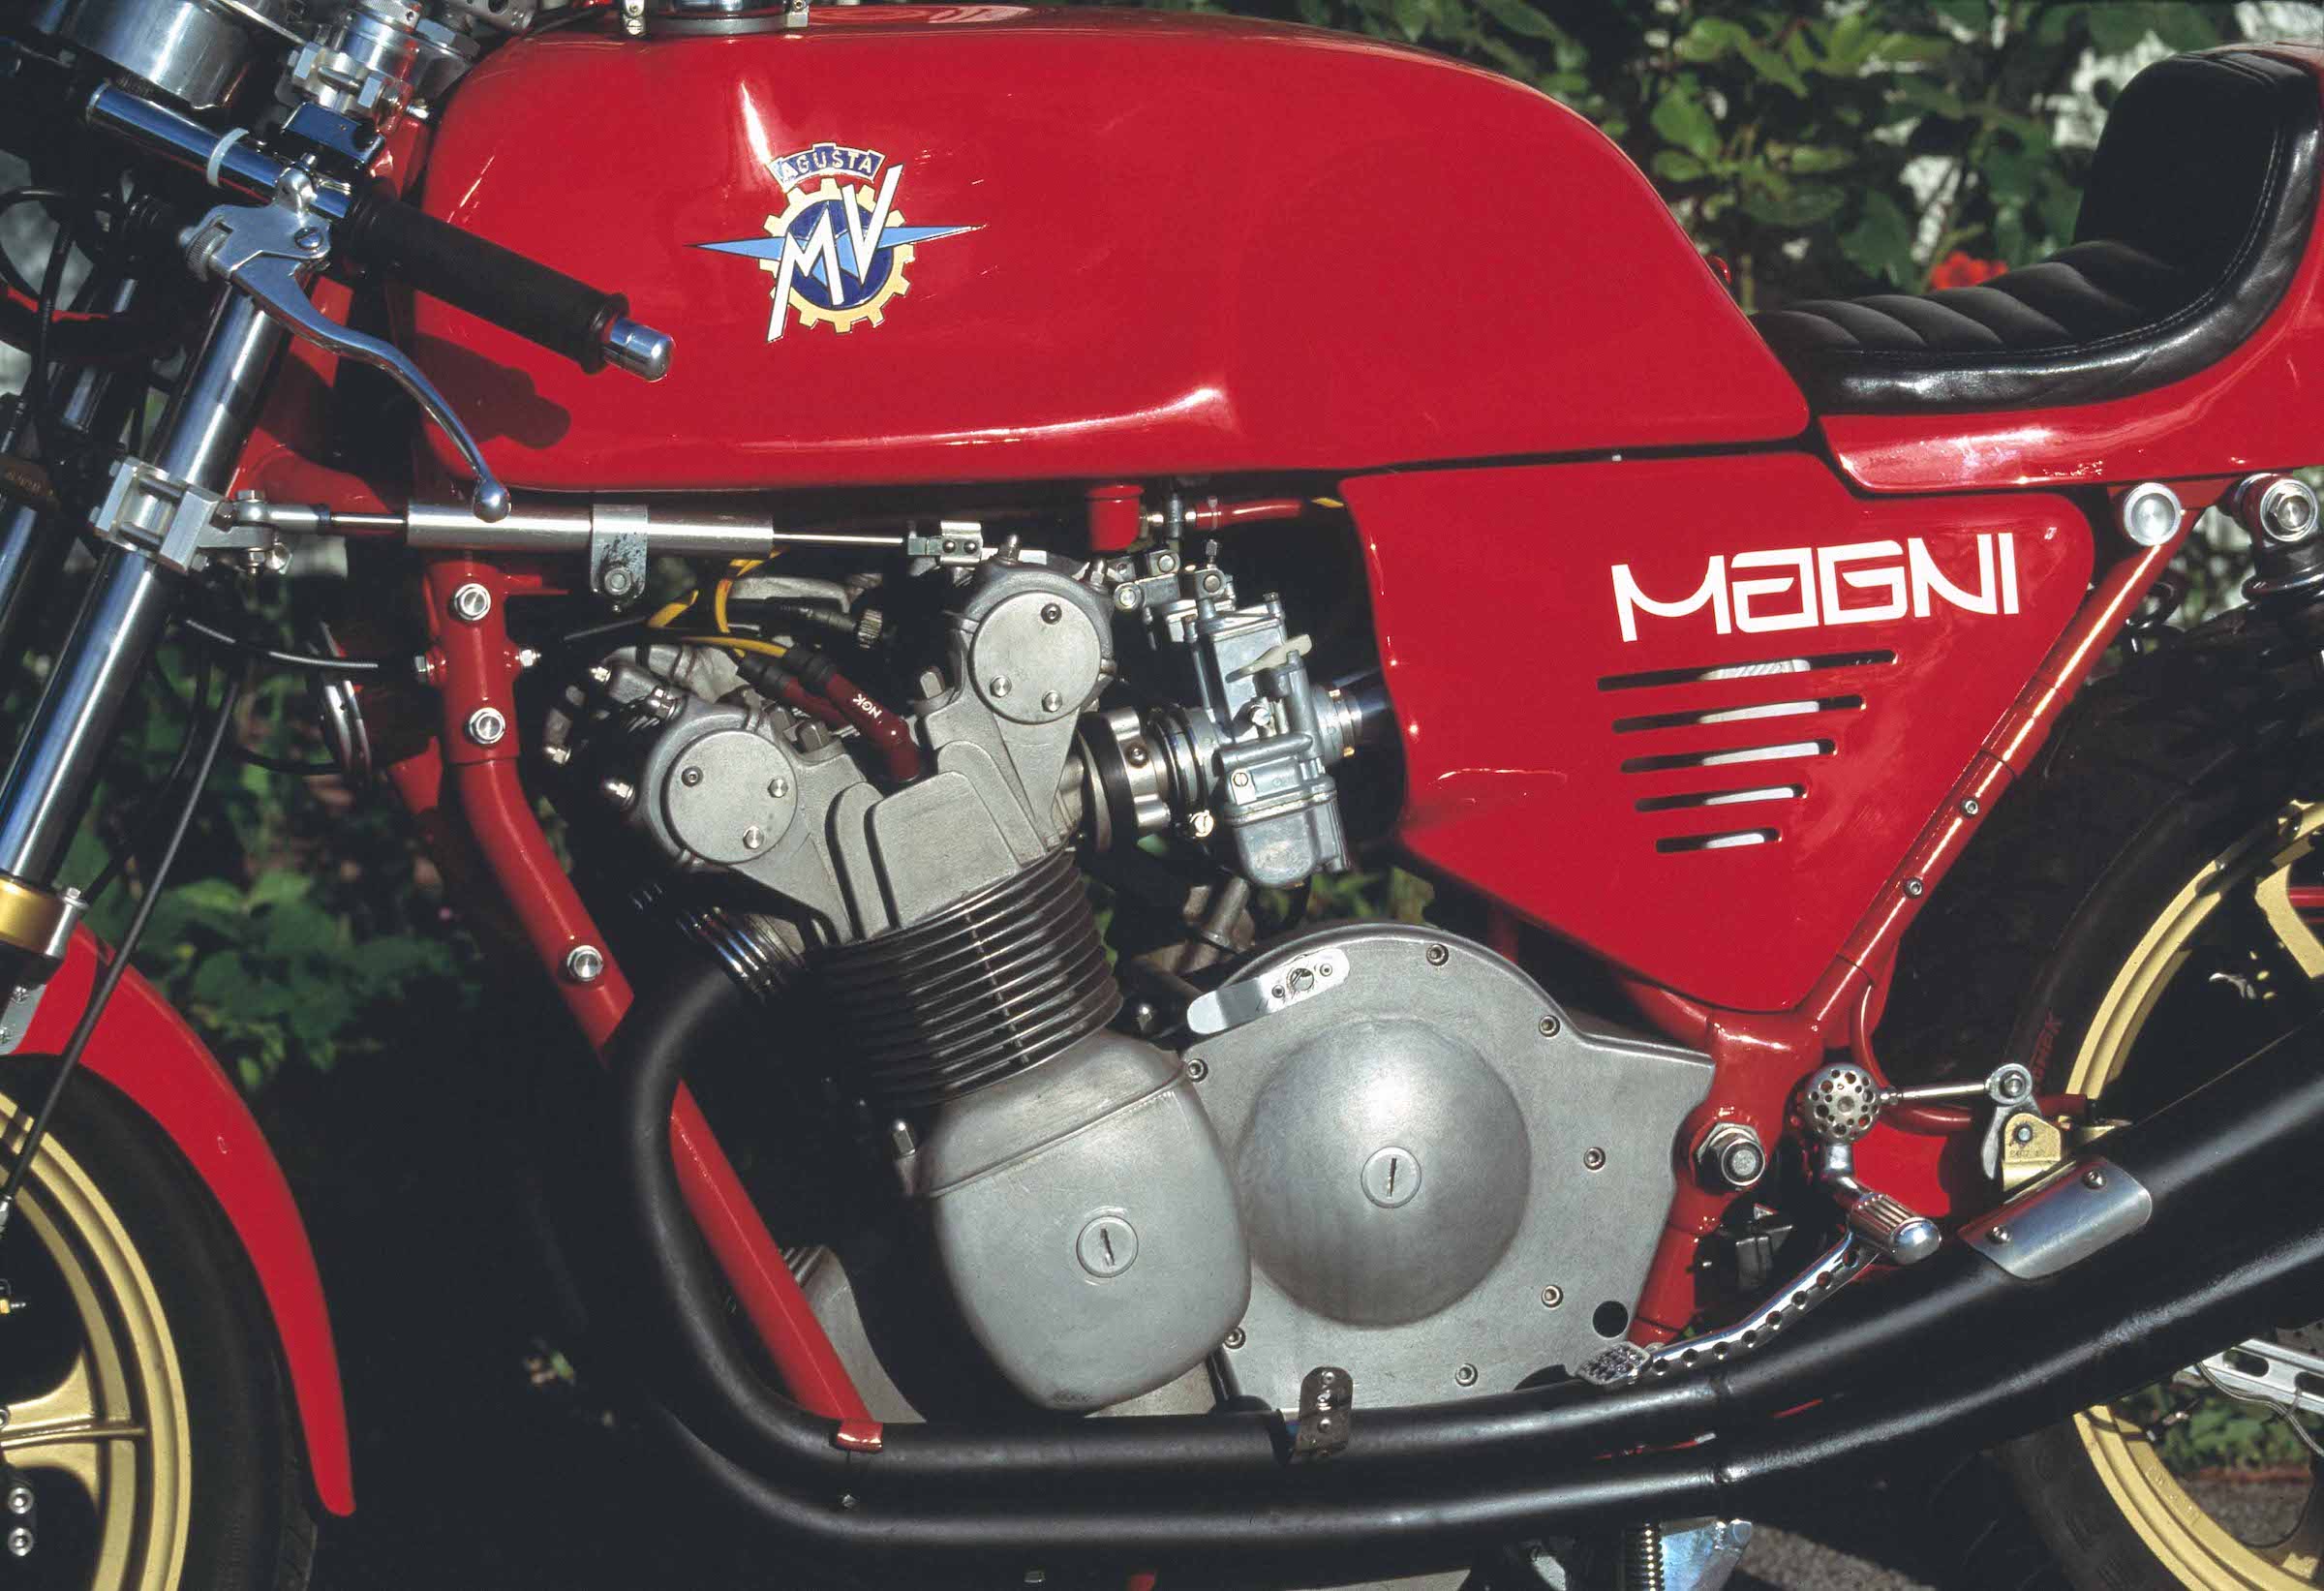 MV Agusta Magni engine